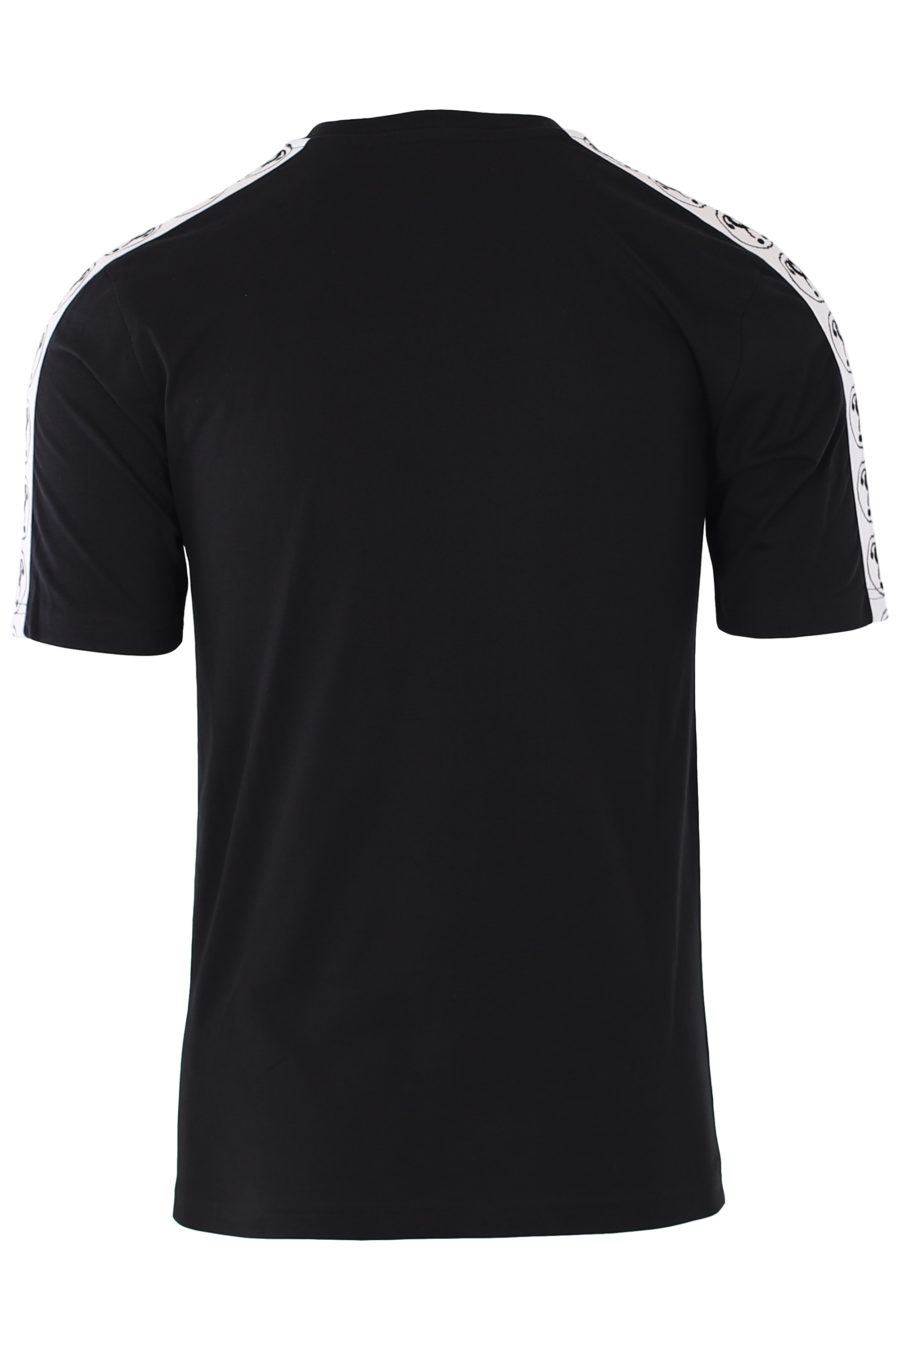 Camiseta negra con logo doble pregunta pequeño y cinta en mangas - IMG 9335